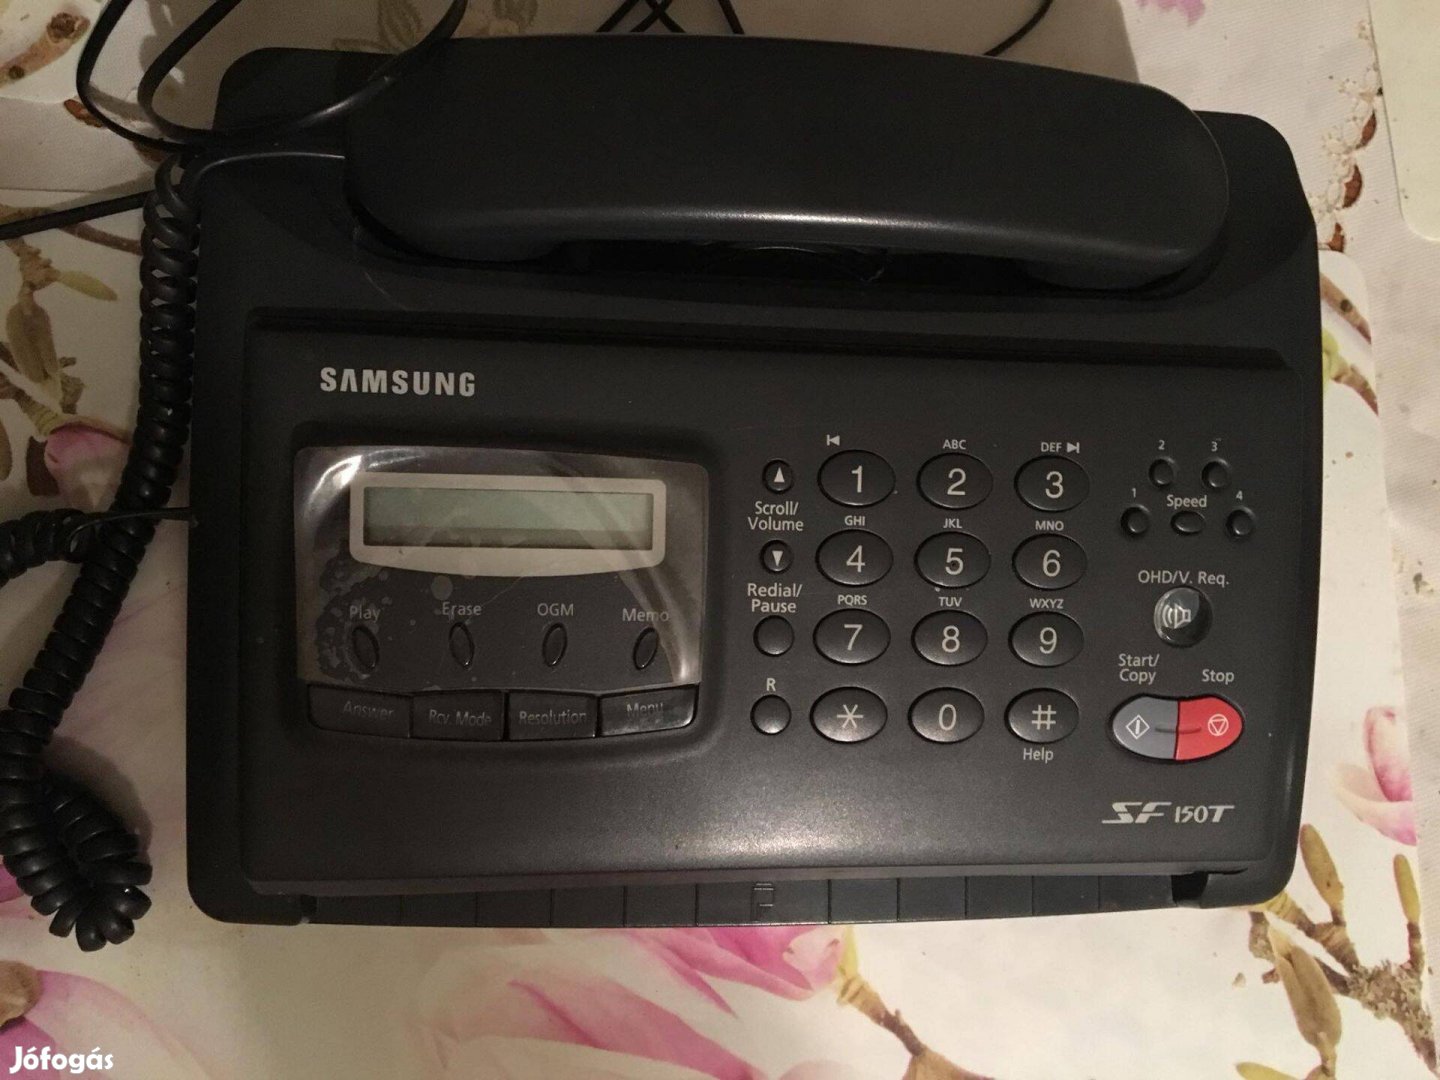 Samsung fax SF150T